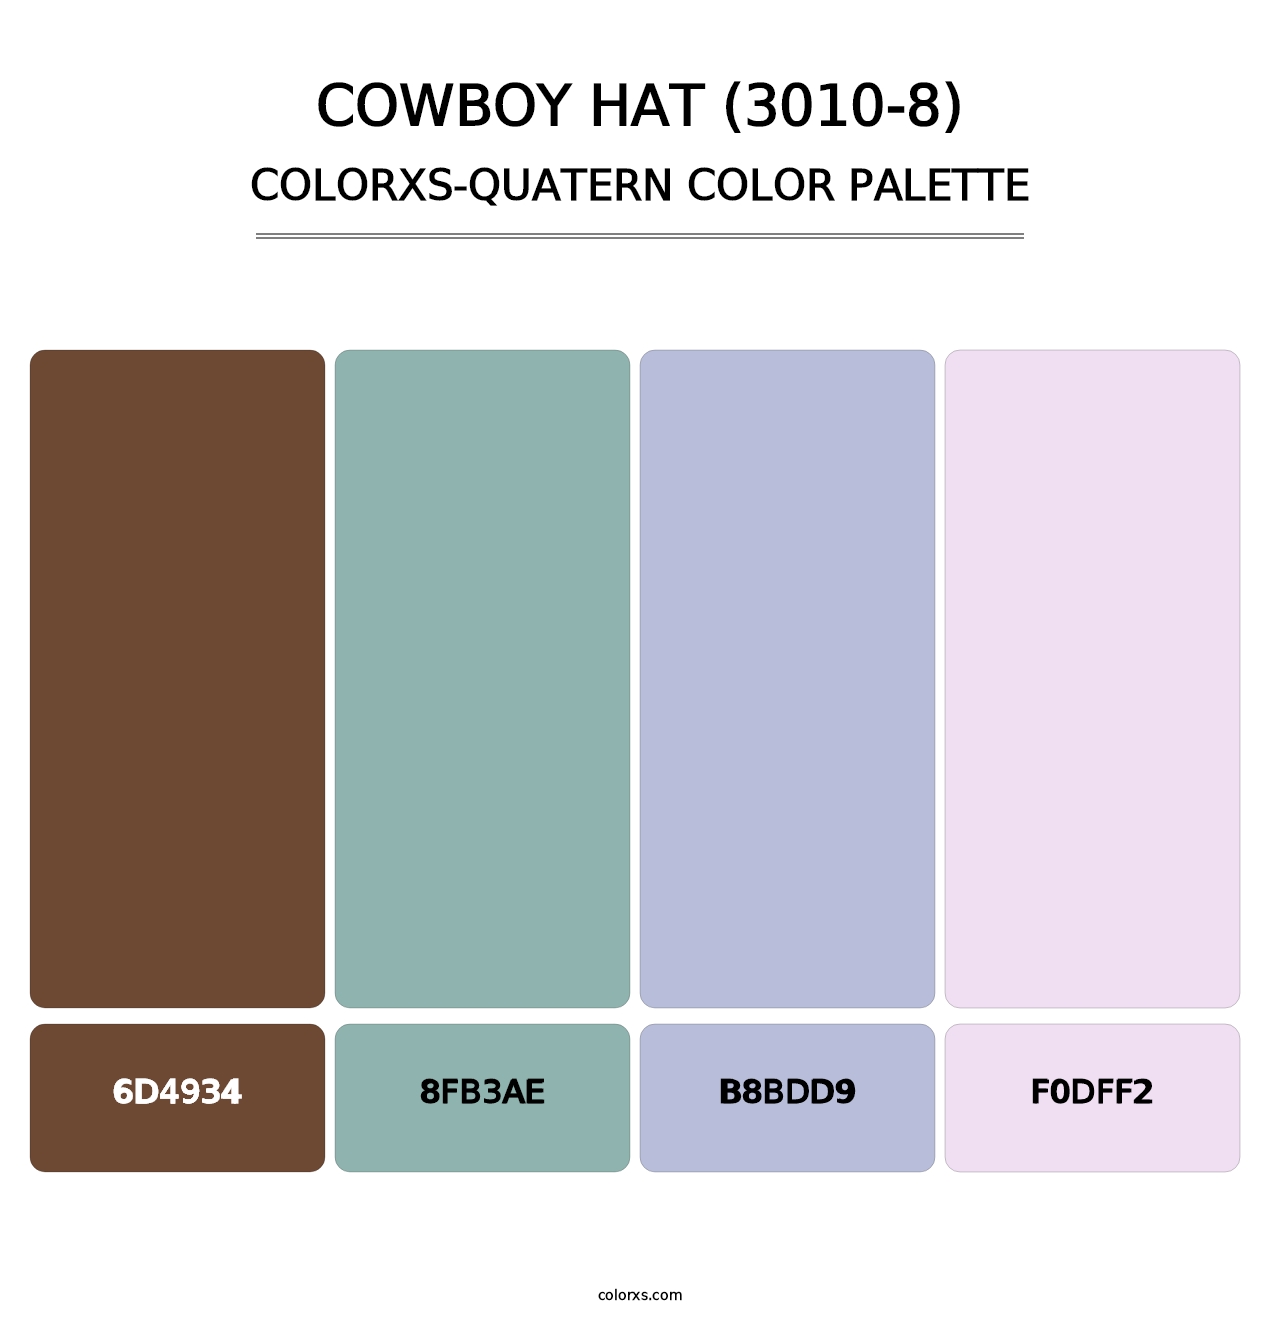 Cowboy Hat (3010-8) - Colorxs Quatern Palette